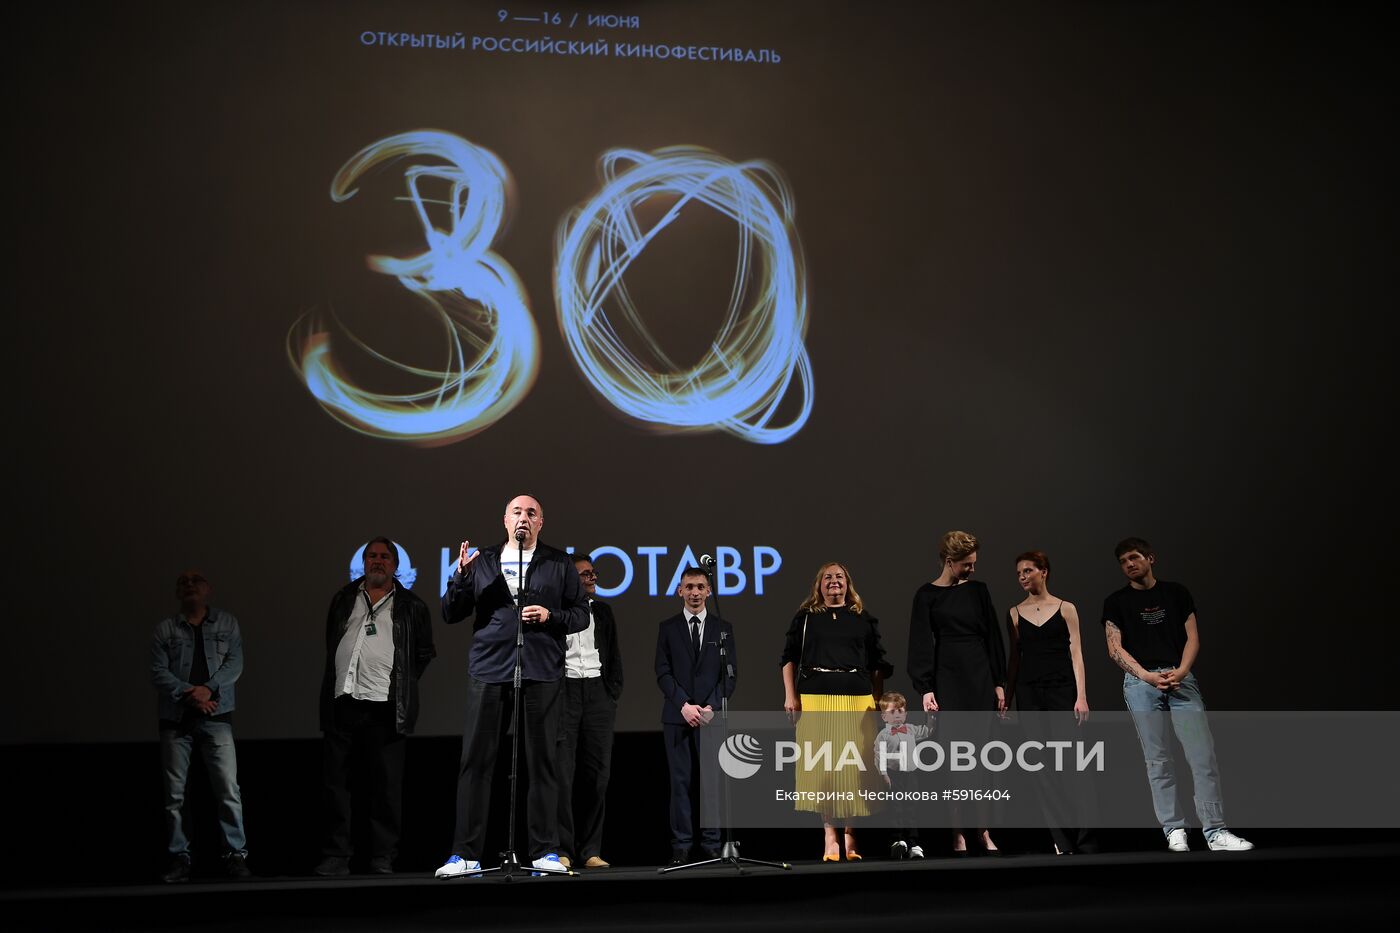 Открытый российский кинофестиваль "Кинотавр". День шестой